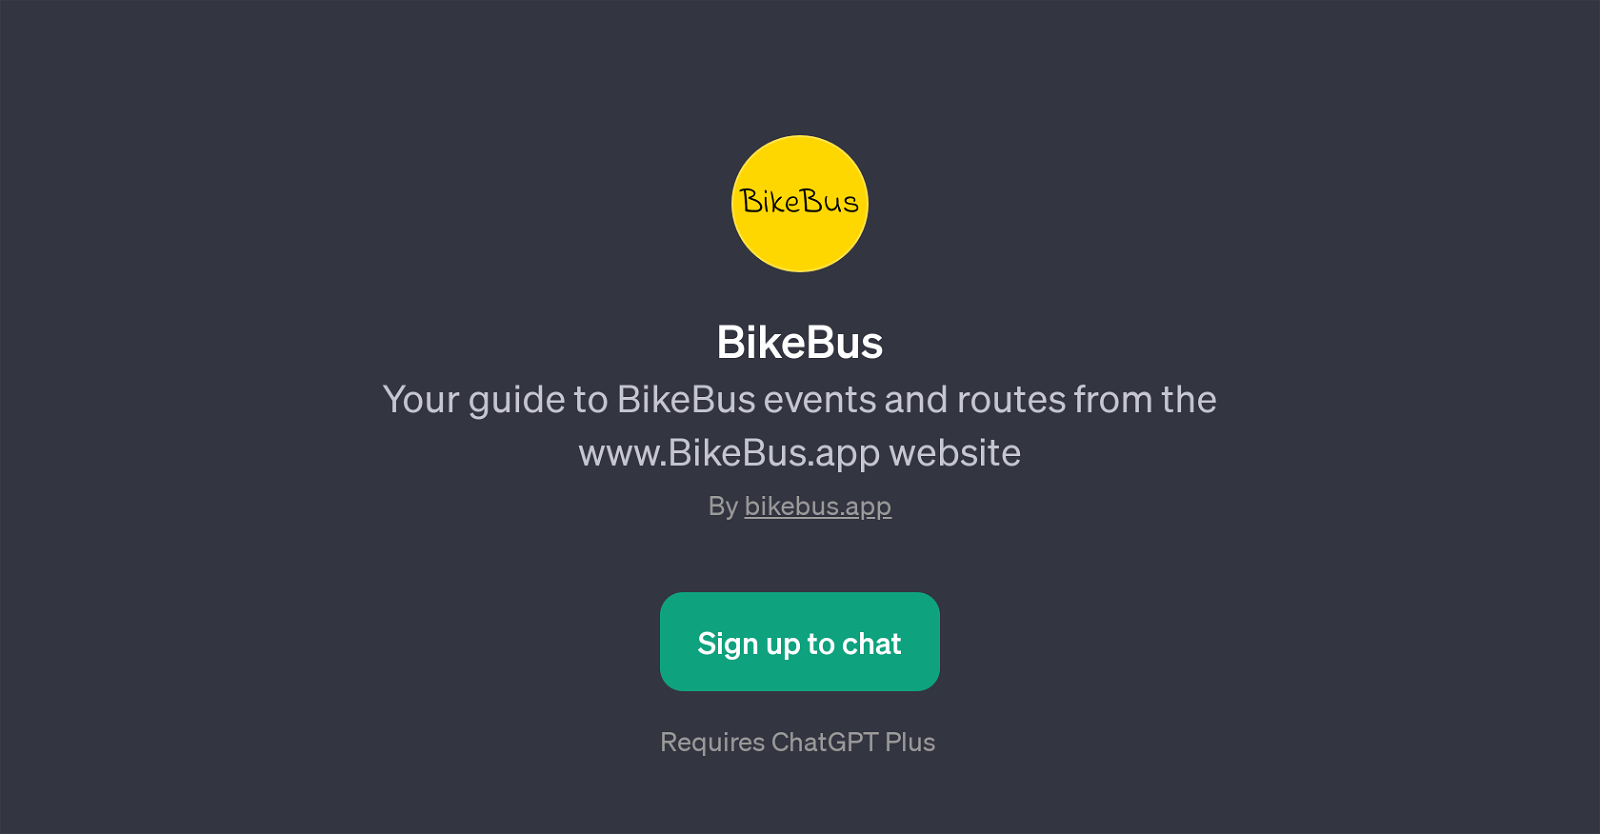 BikeBus website